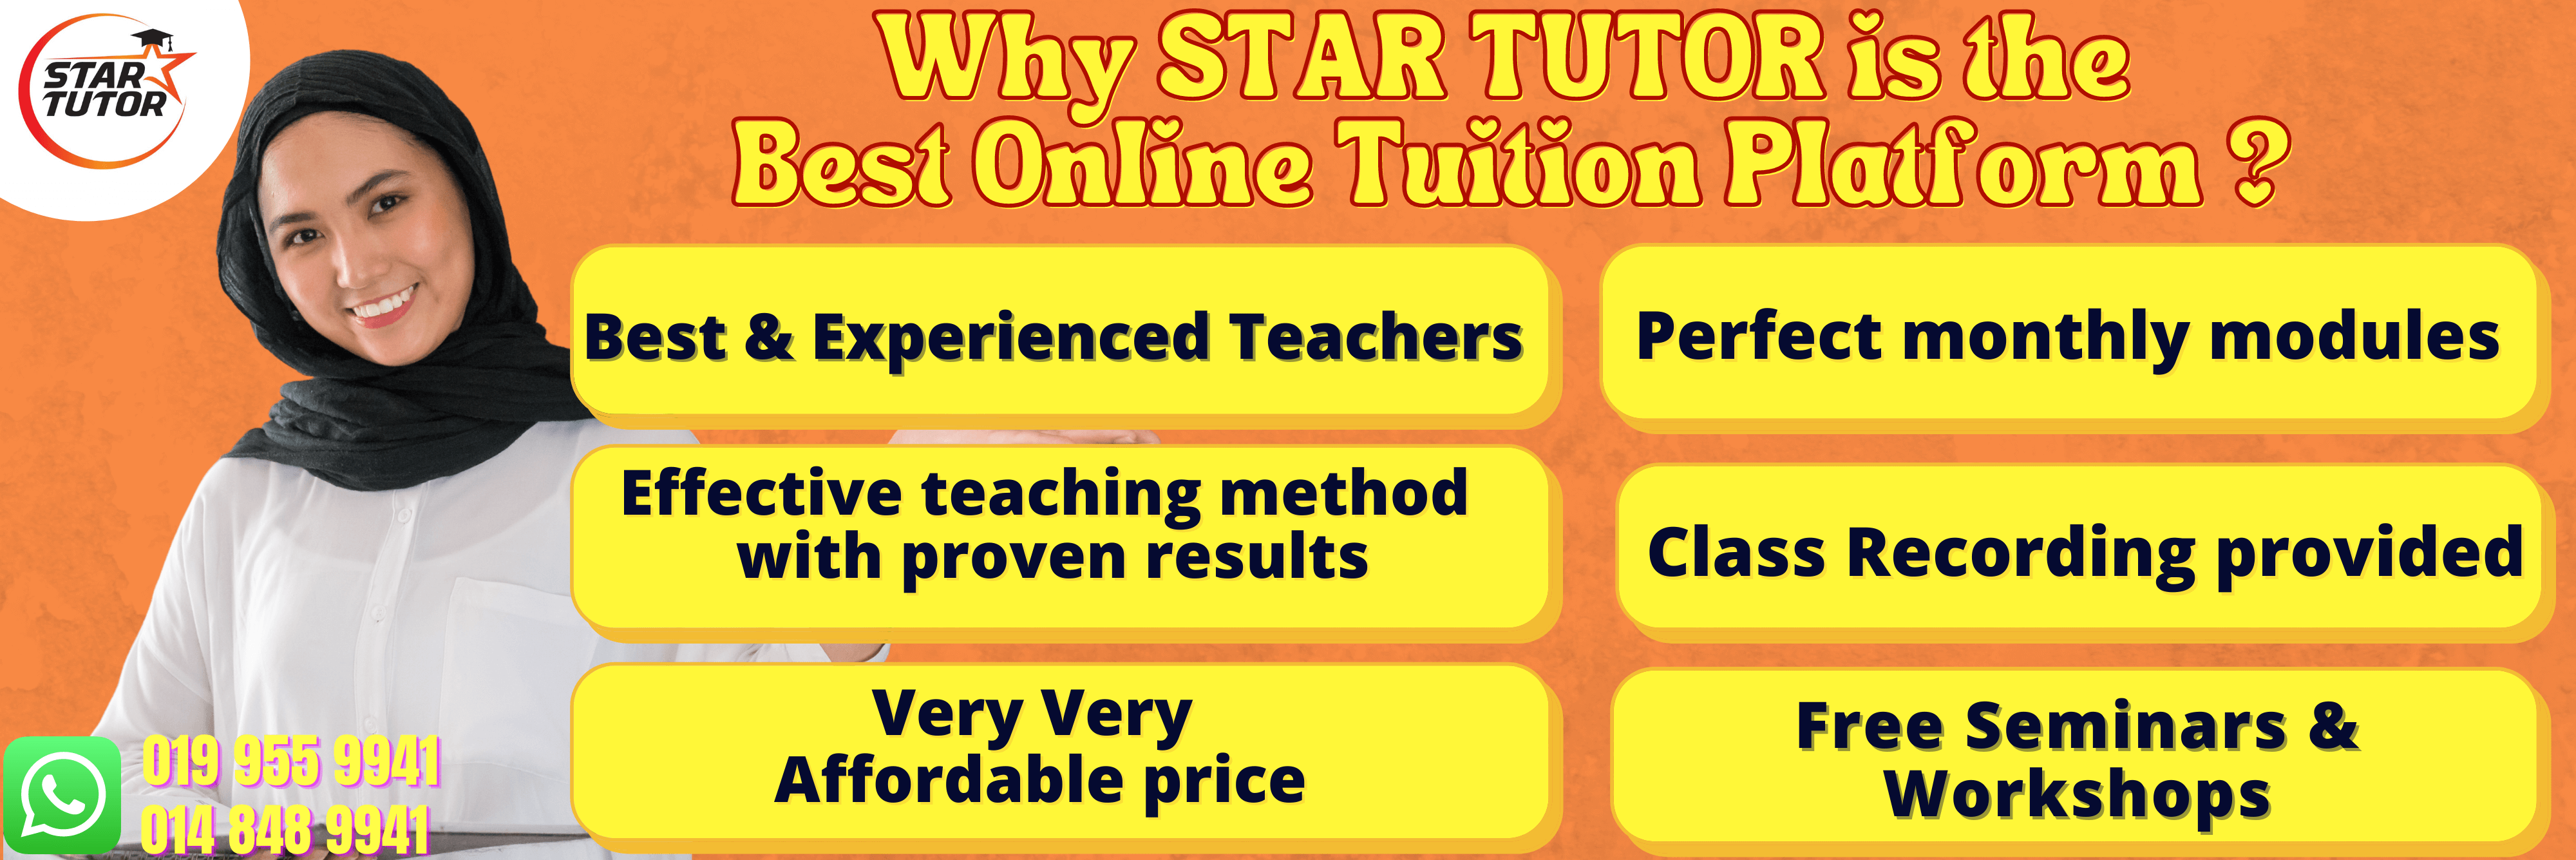 Education online star tutor